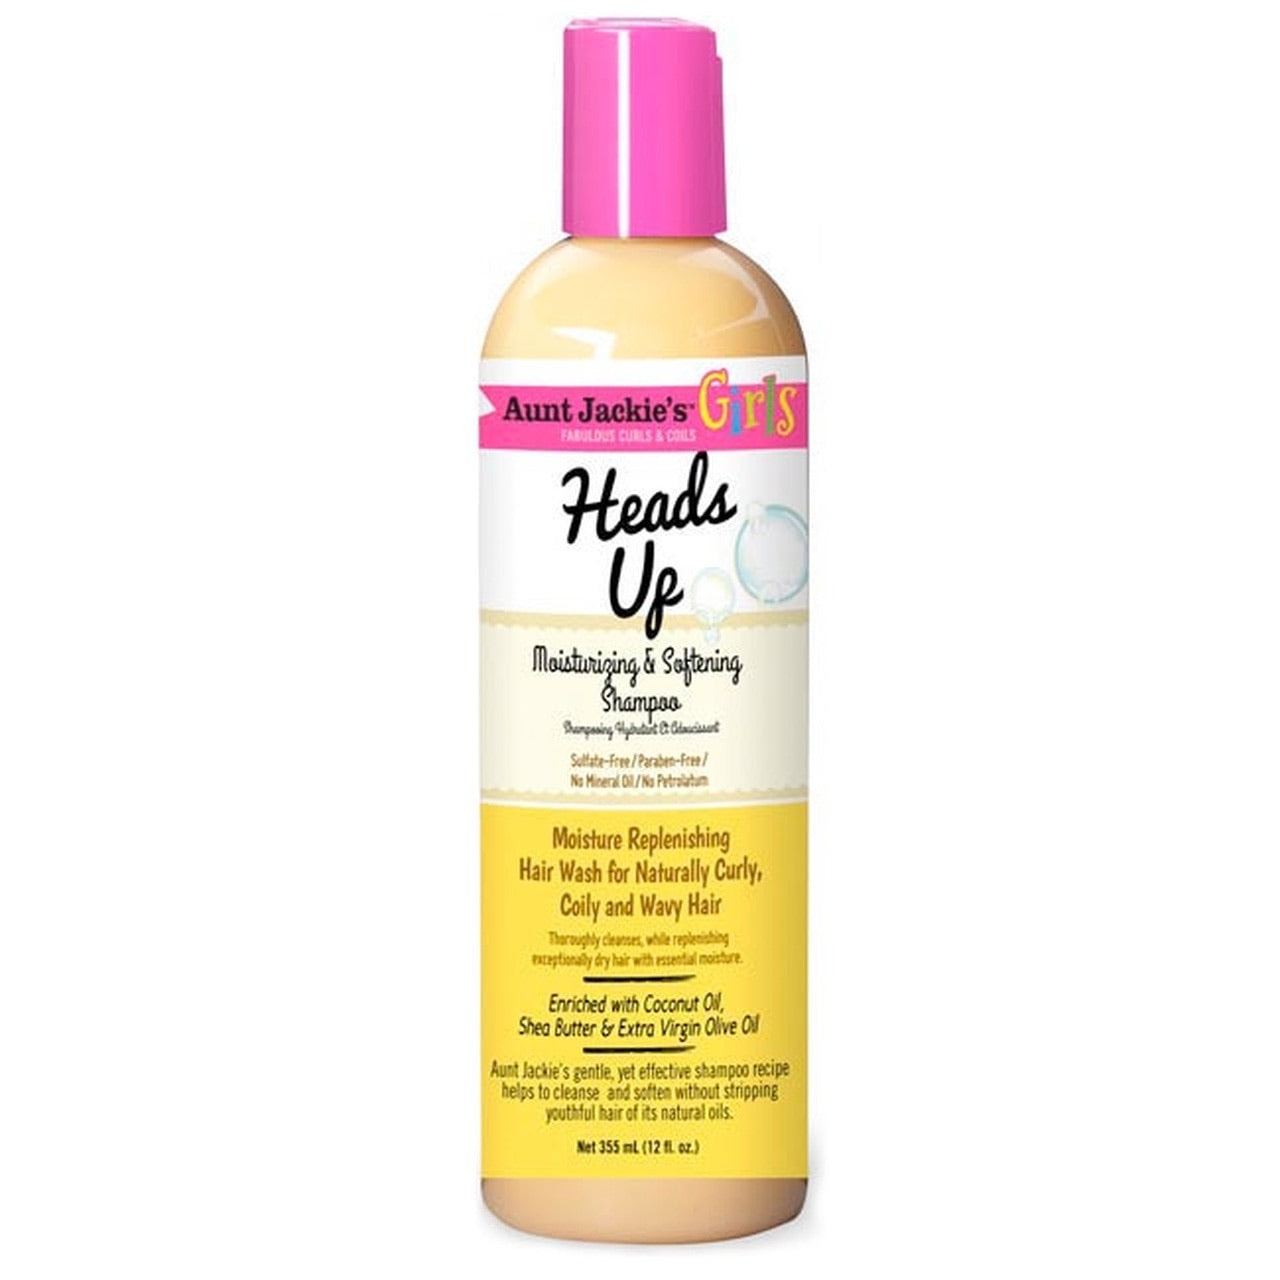 Aunt Jackie’s heads up moisturizing & softening shampoo 354ml